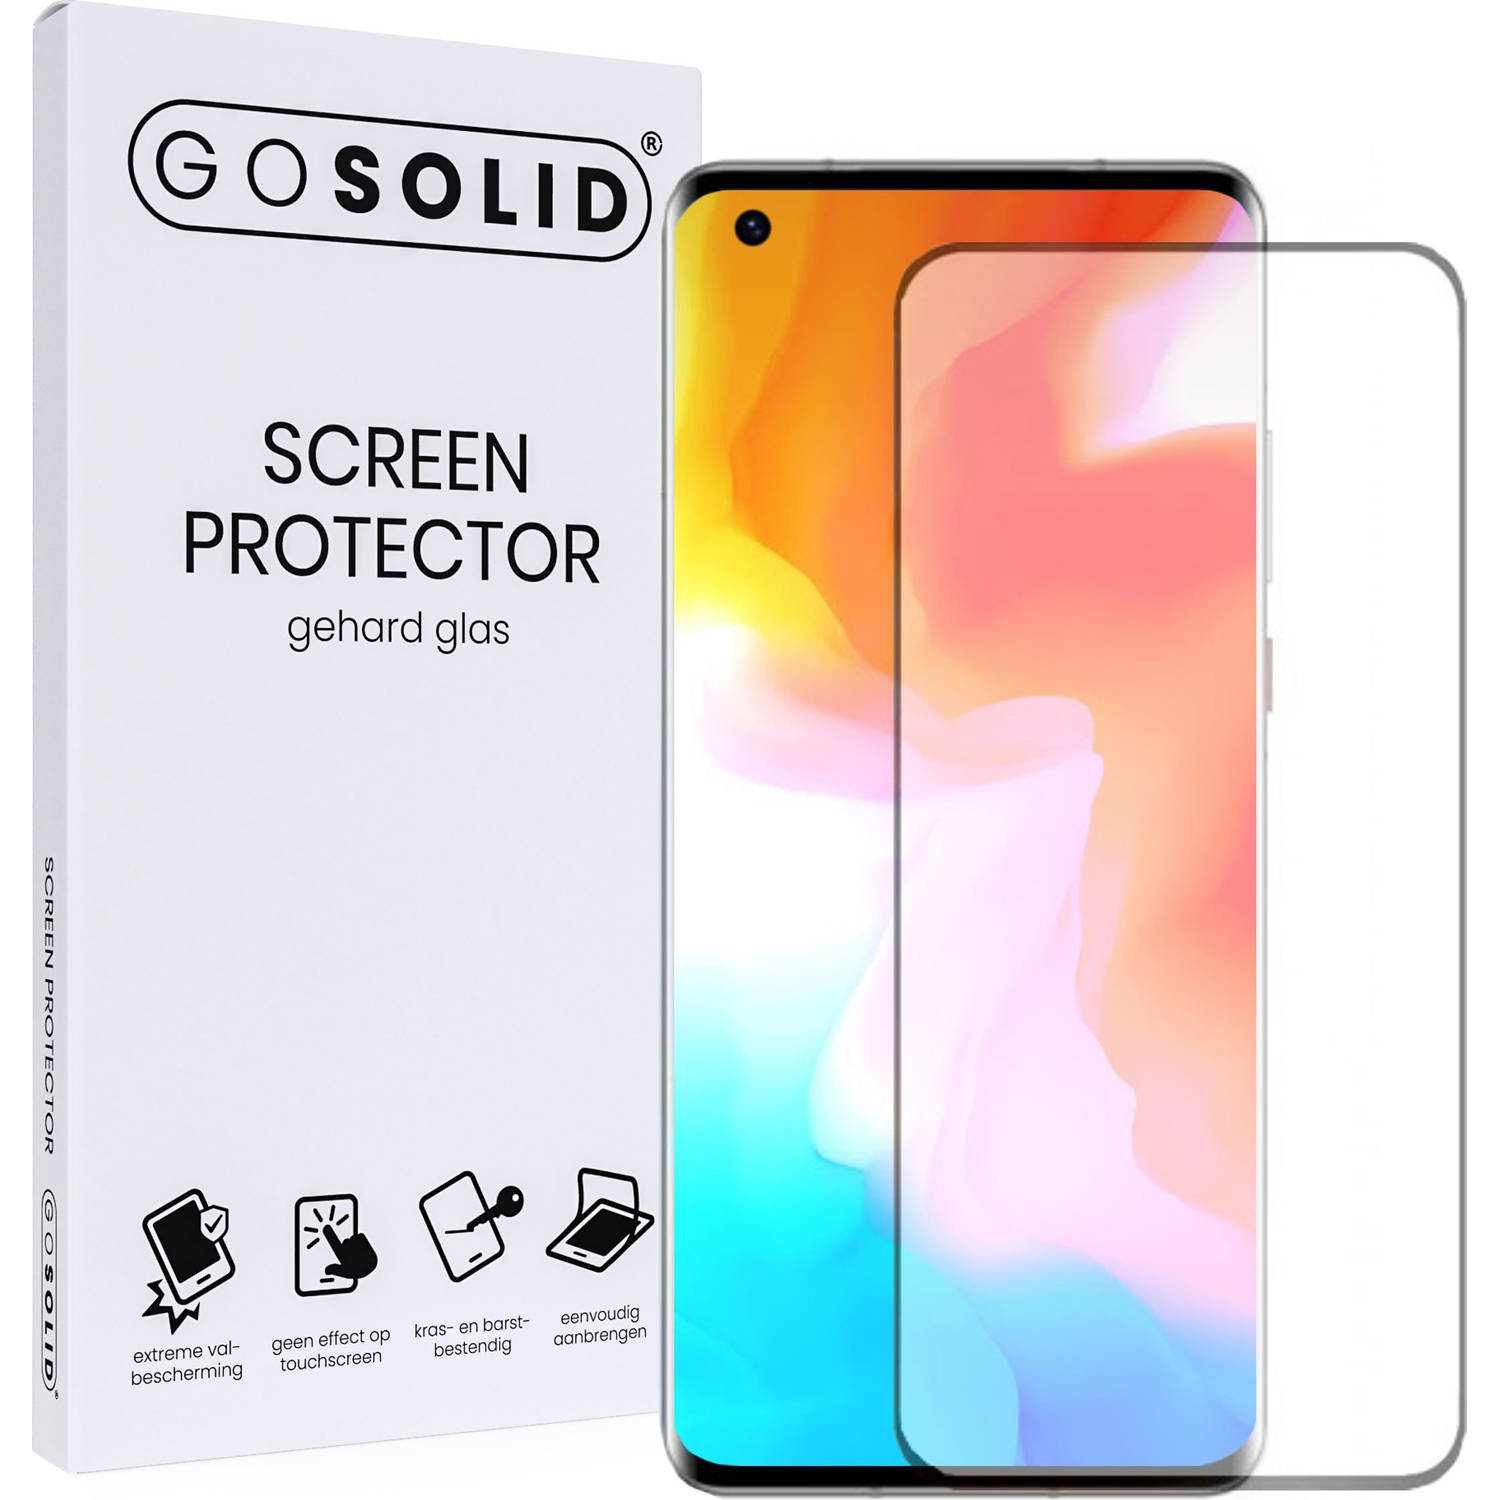 GO SOLID! Screenprotector voor Oneplus 9 gehard glas